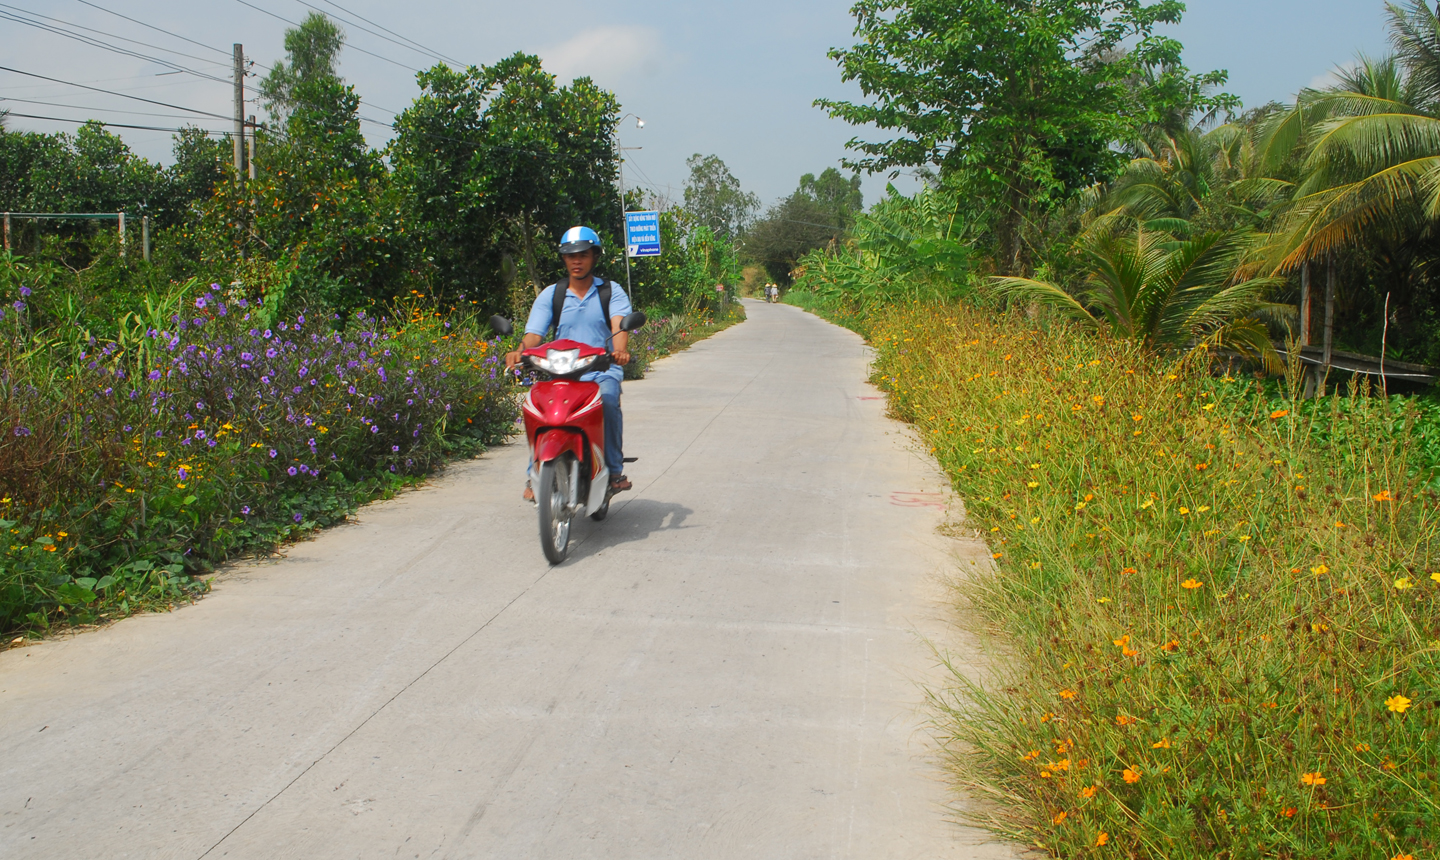 Con đường đạt chuẩn NTM và được trồng hoa 2 bên đường ở huyện Cái Bè.